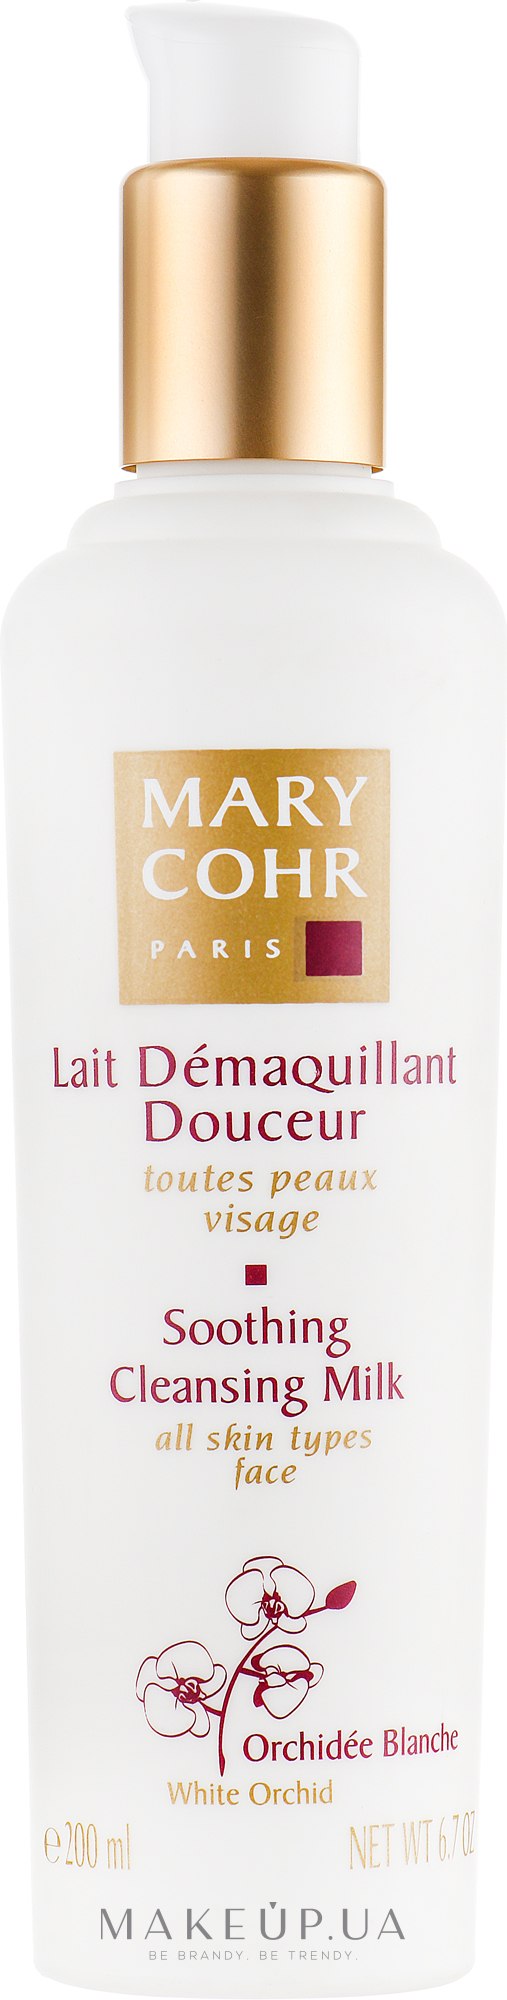 Lait Démaquillant Douceur - Mary Cohr